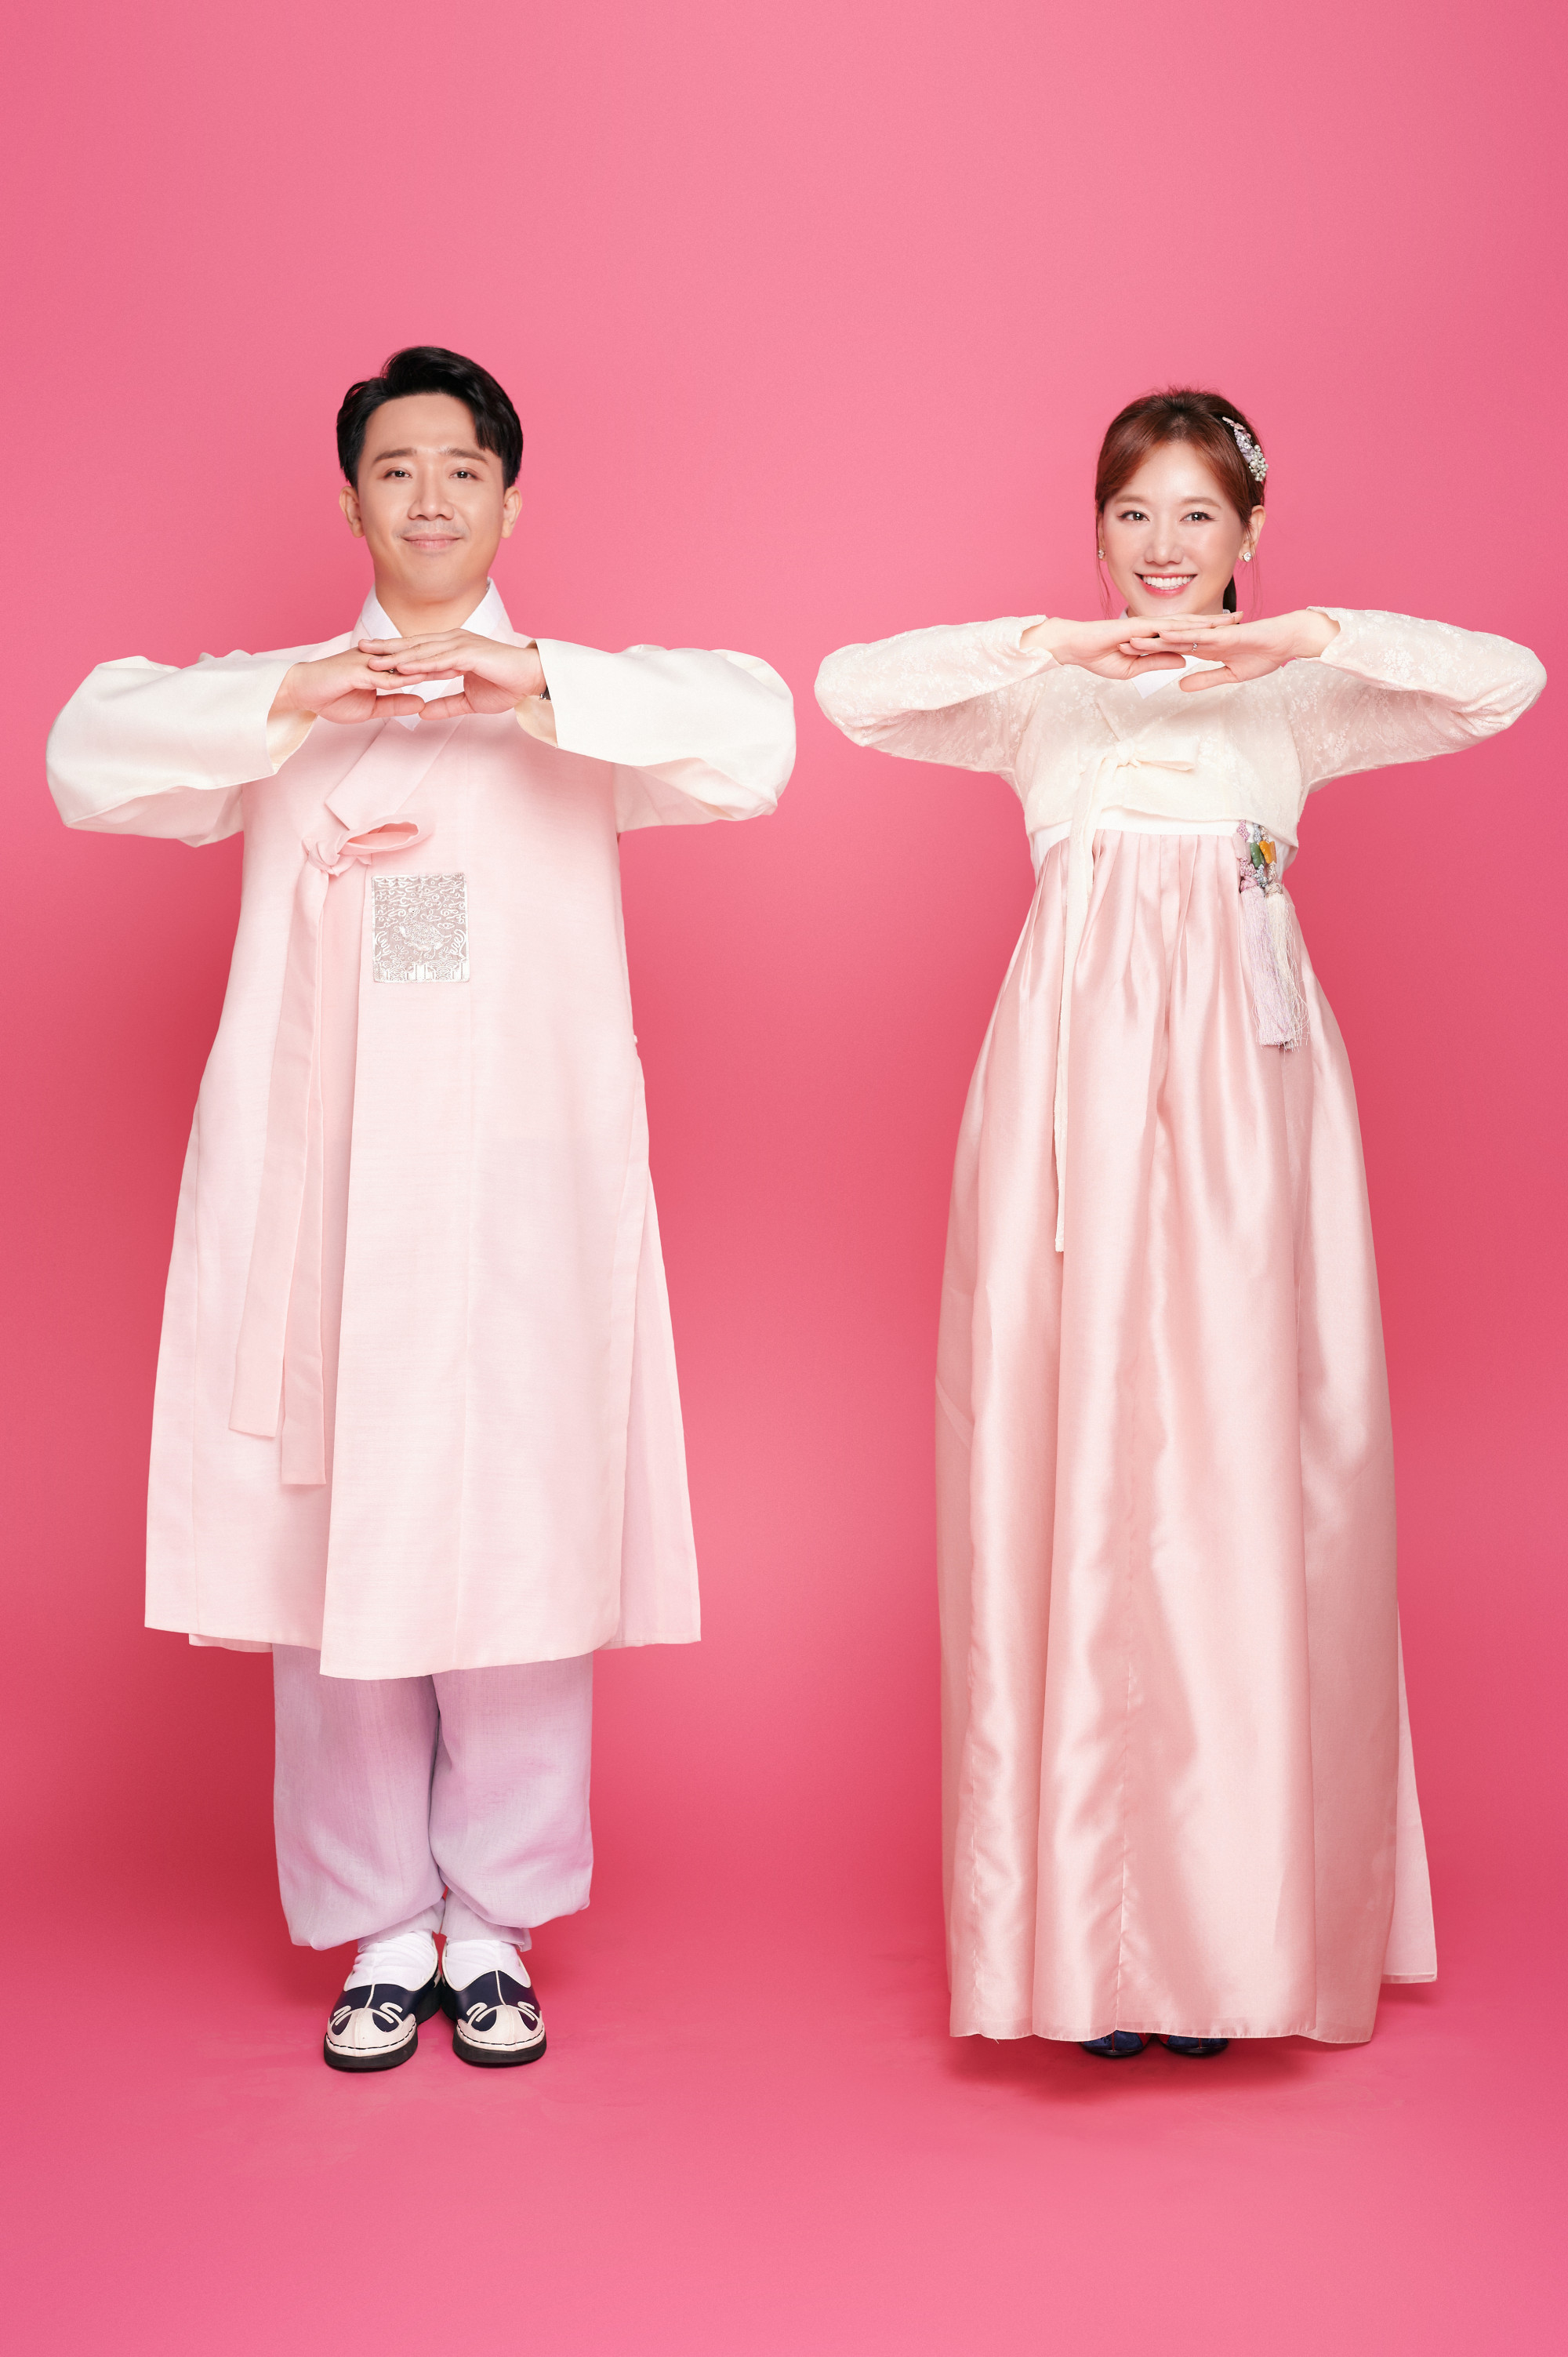 Trang phục truyền thống Hàn Quốc được Trấn Thành, Hari Won đặt may từ Hàn Quốc gửi sang. Họ chọn màu hồng ngọt ngào, cũng là gam màu yêu thích của cả hai. 